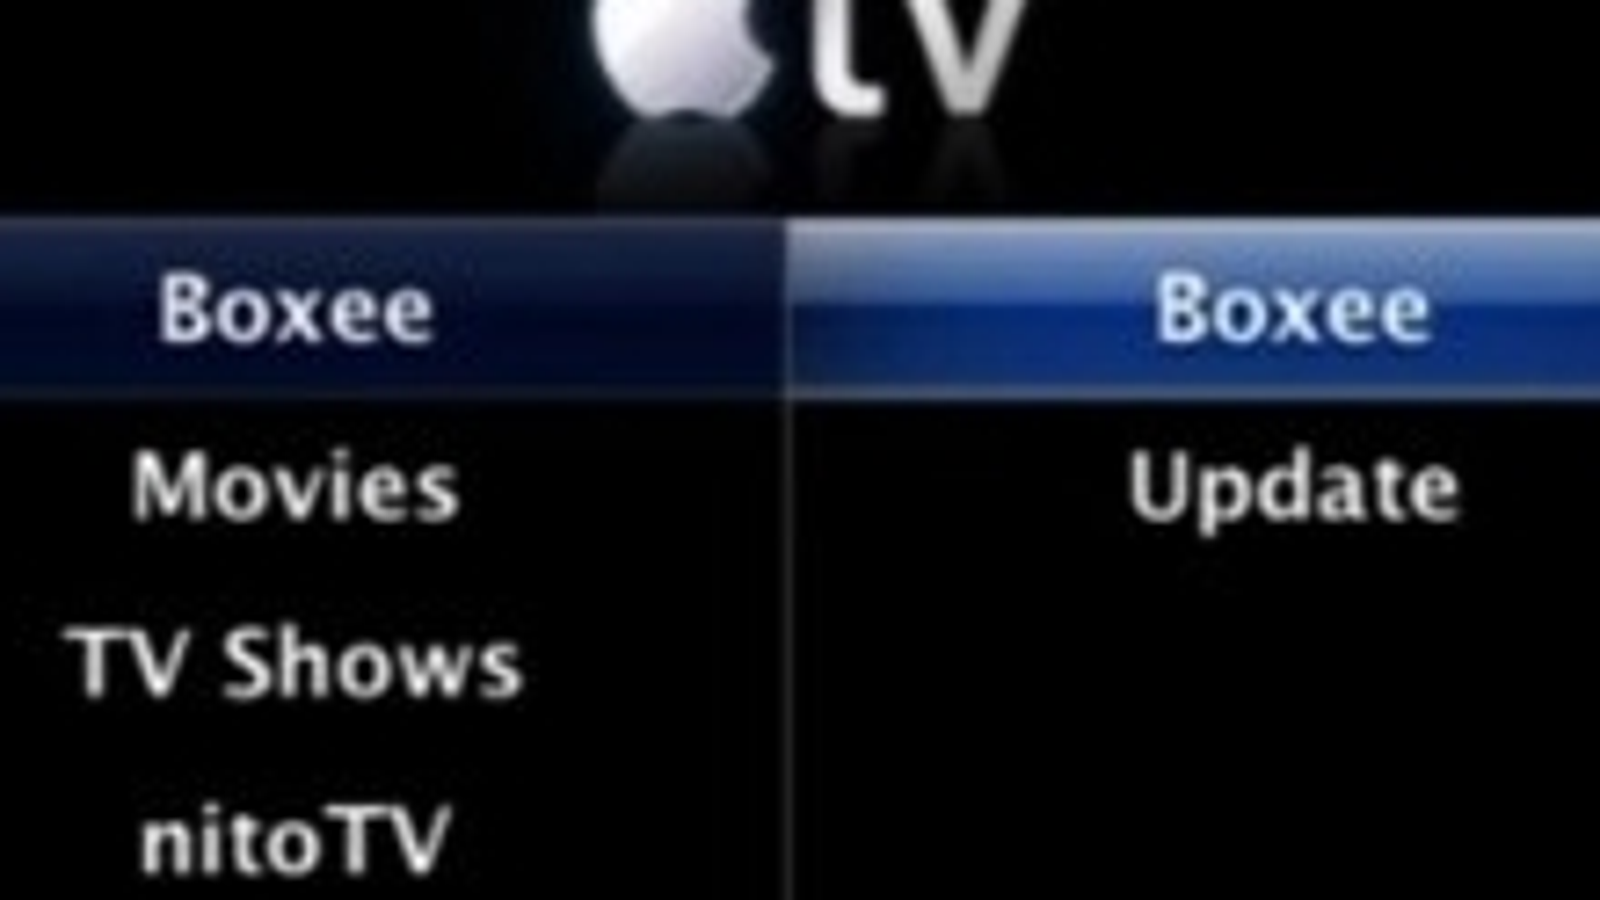 How to run xbmc on apple tv 1